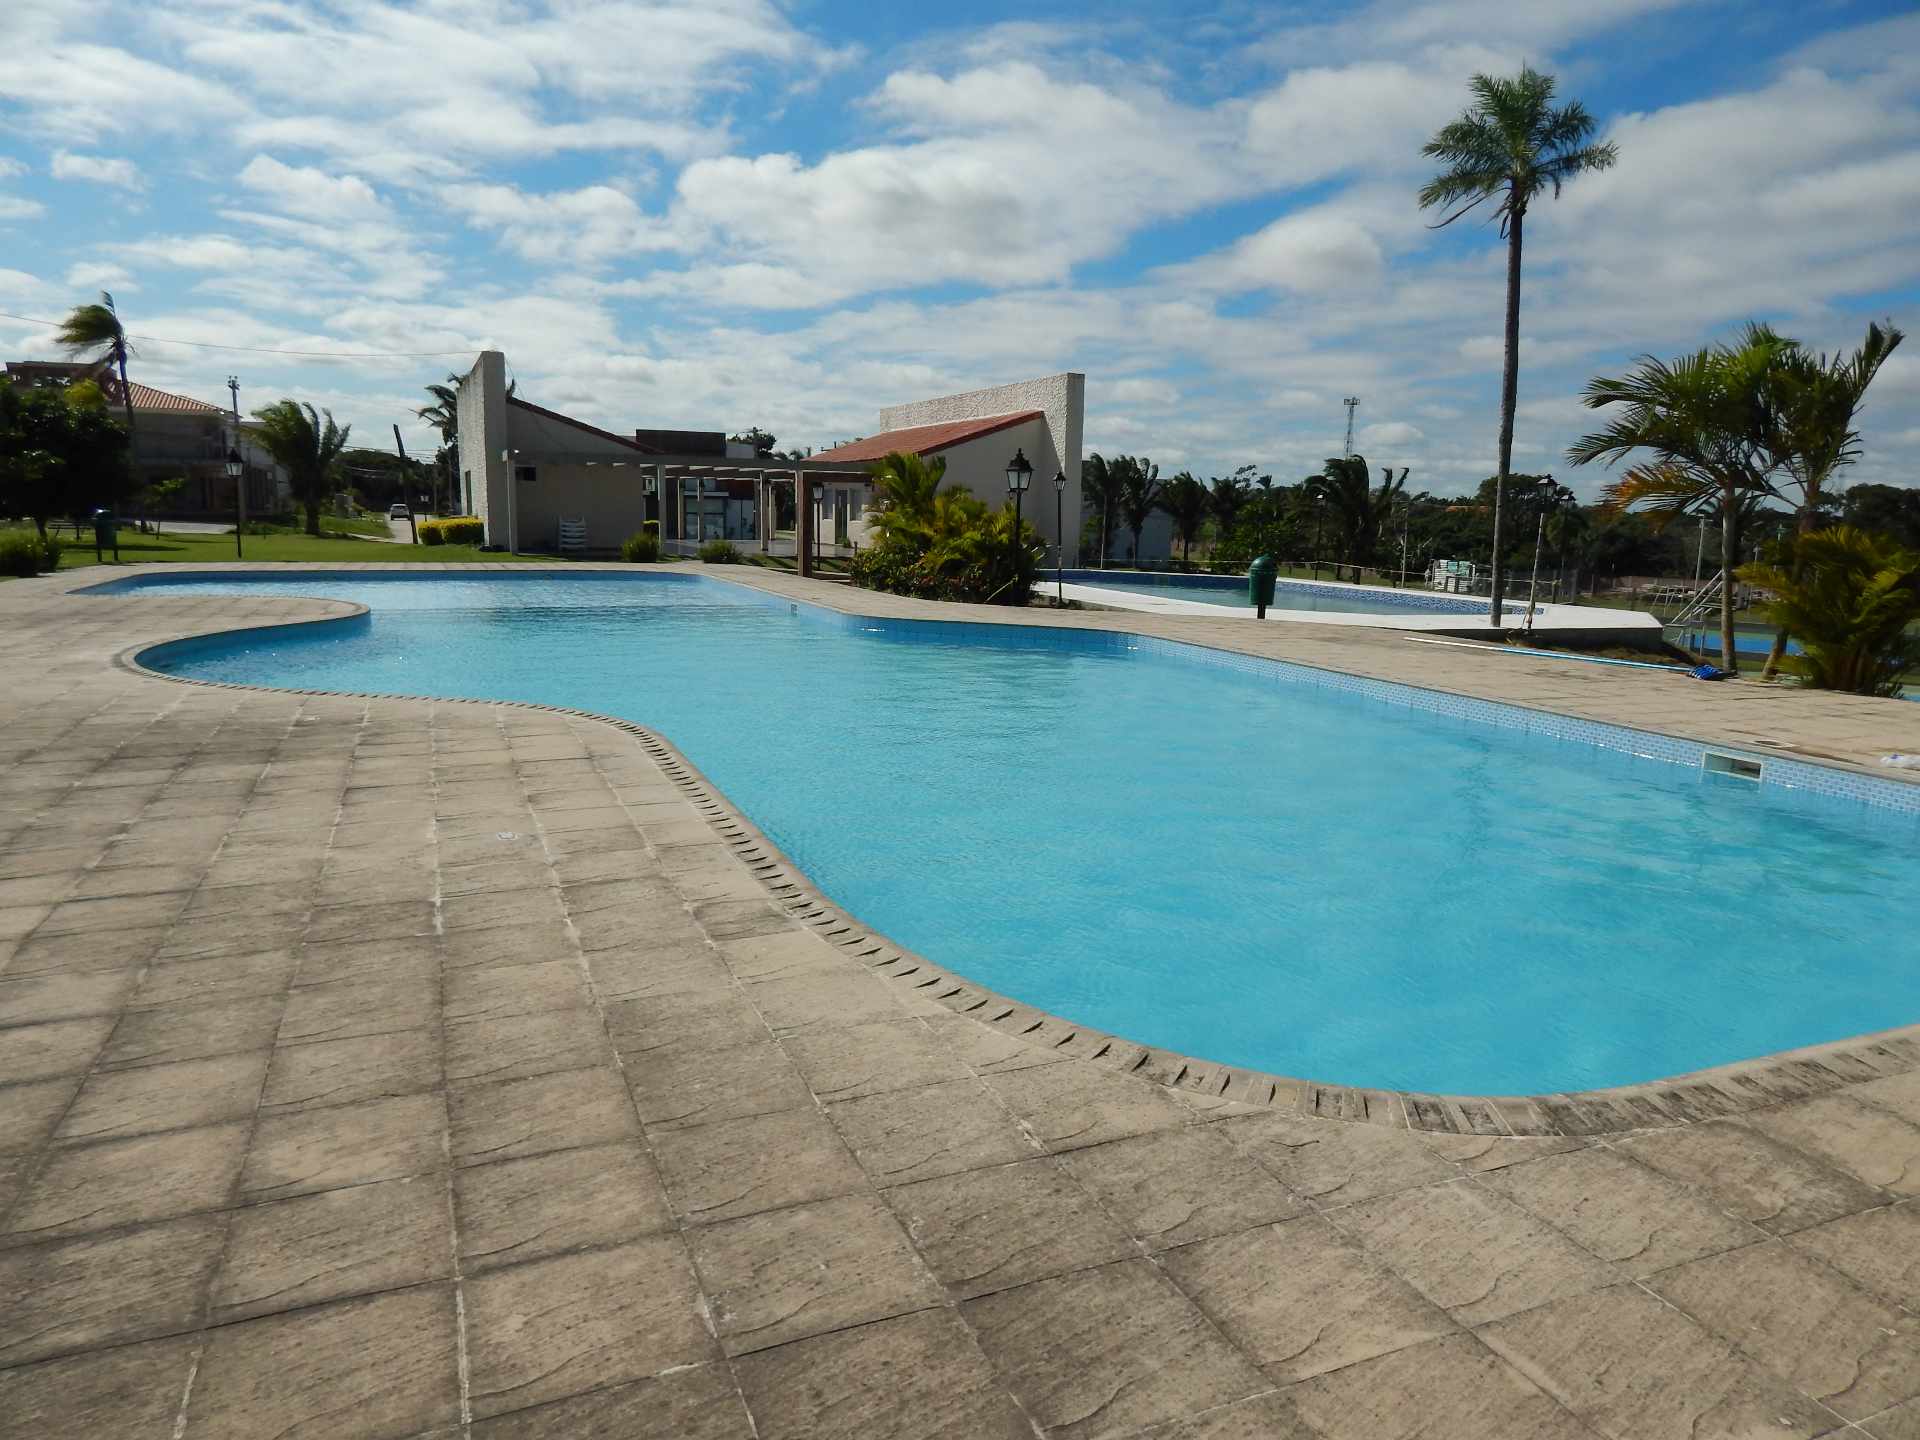 Casa en AlquilerCasa con piscina propia  en alquiler en el Urubo  Foto 4